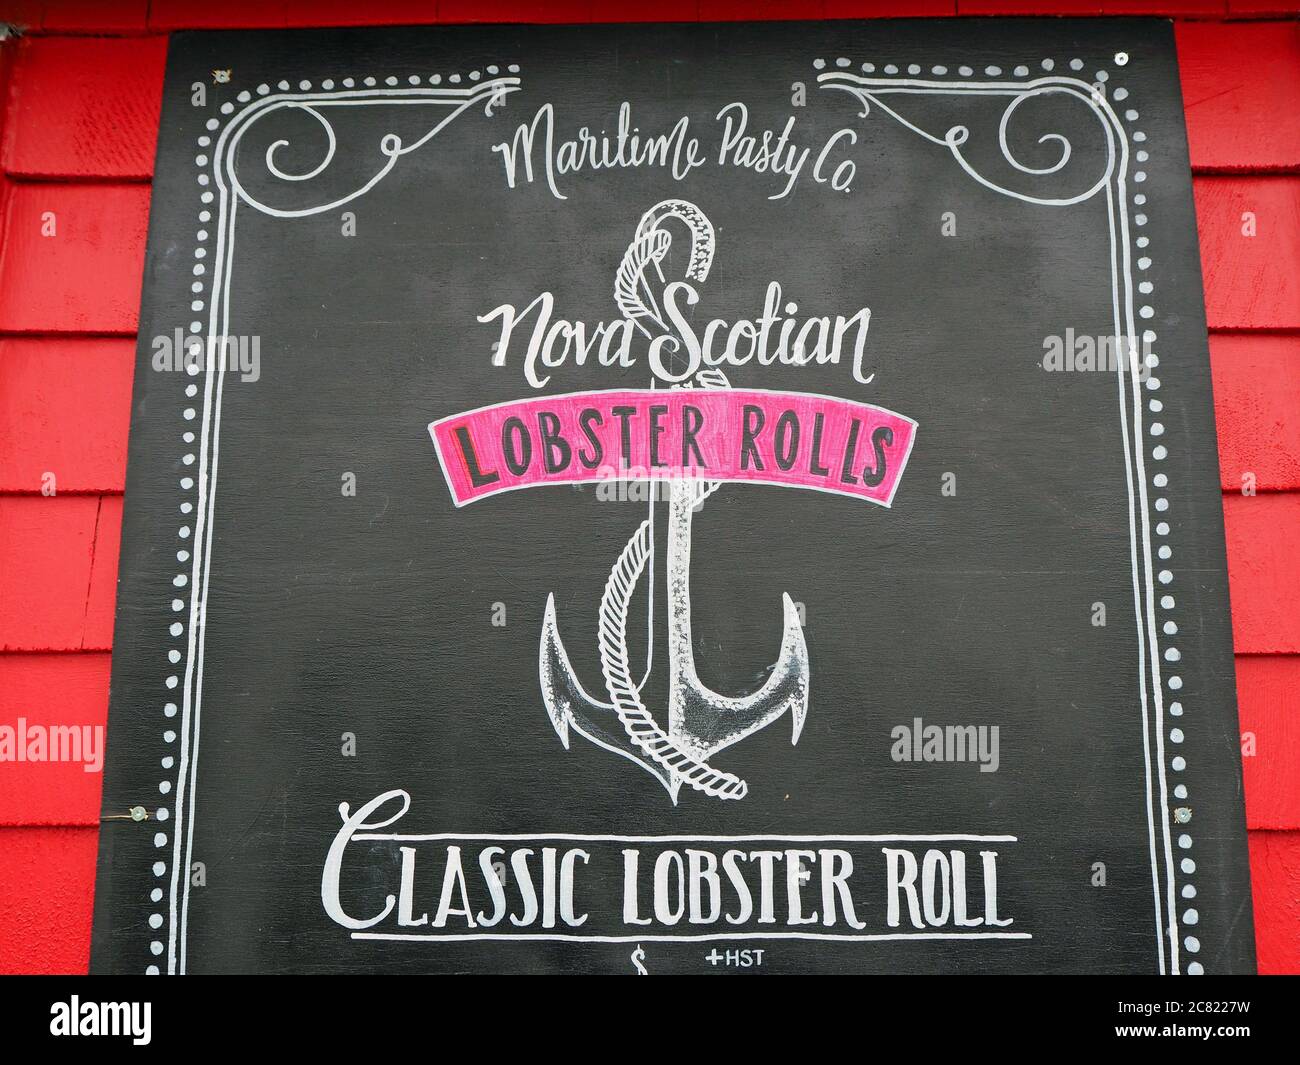 Nova Scotian Lobster Rolls sign, Nova Scotia, Canada Stock Photo